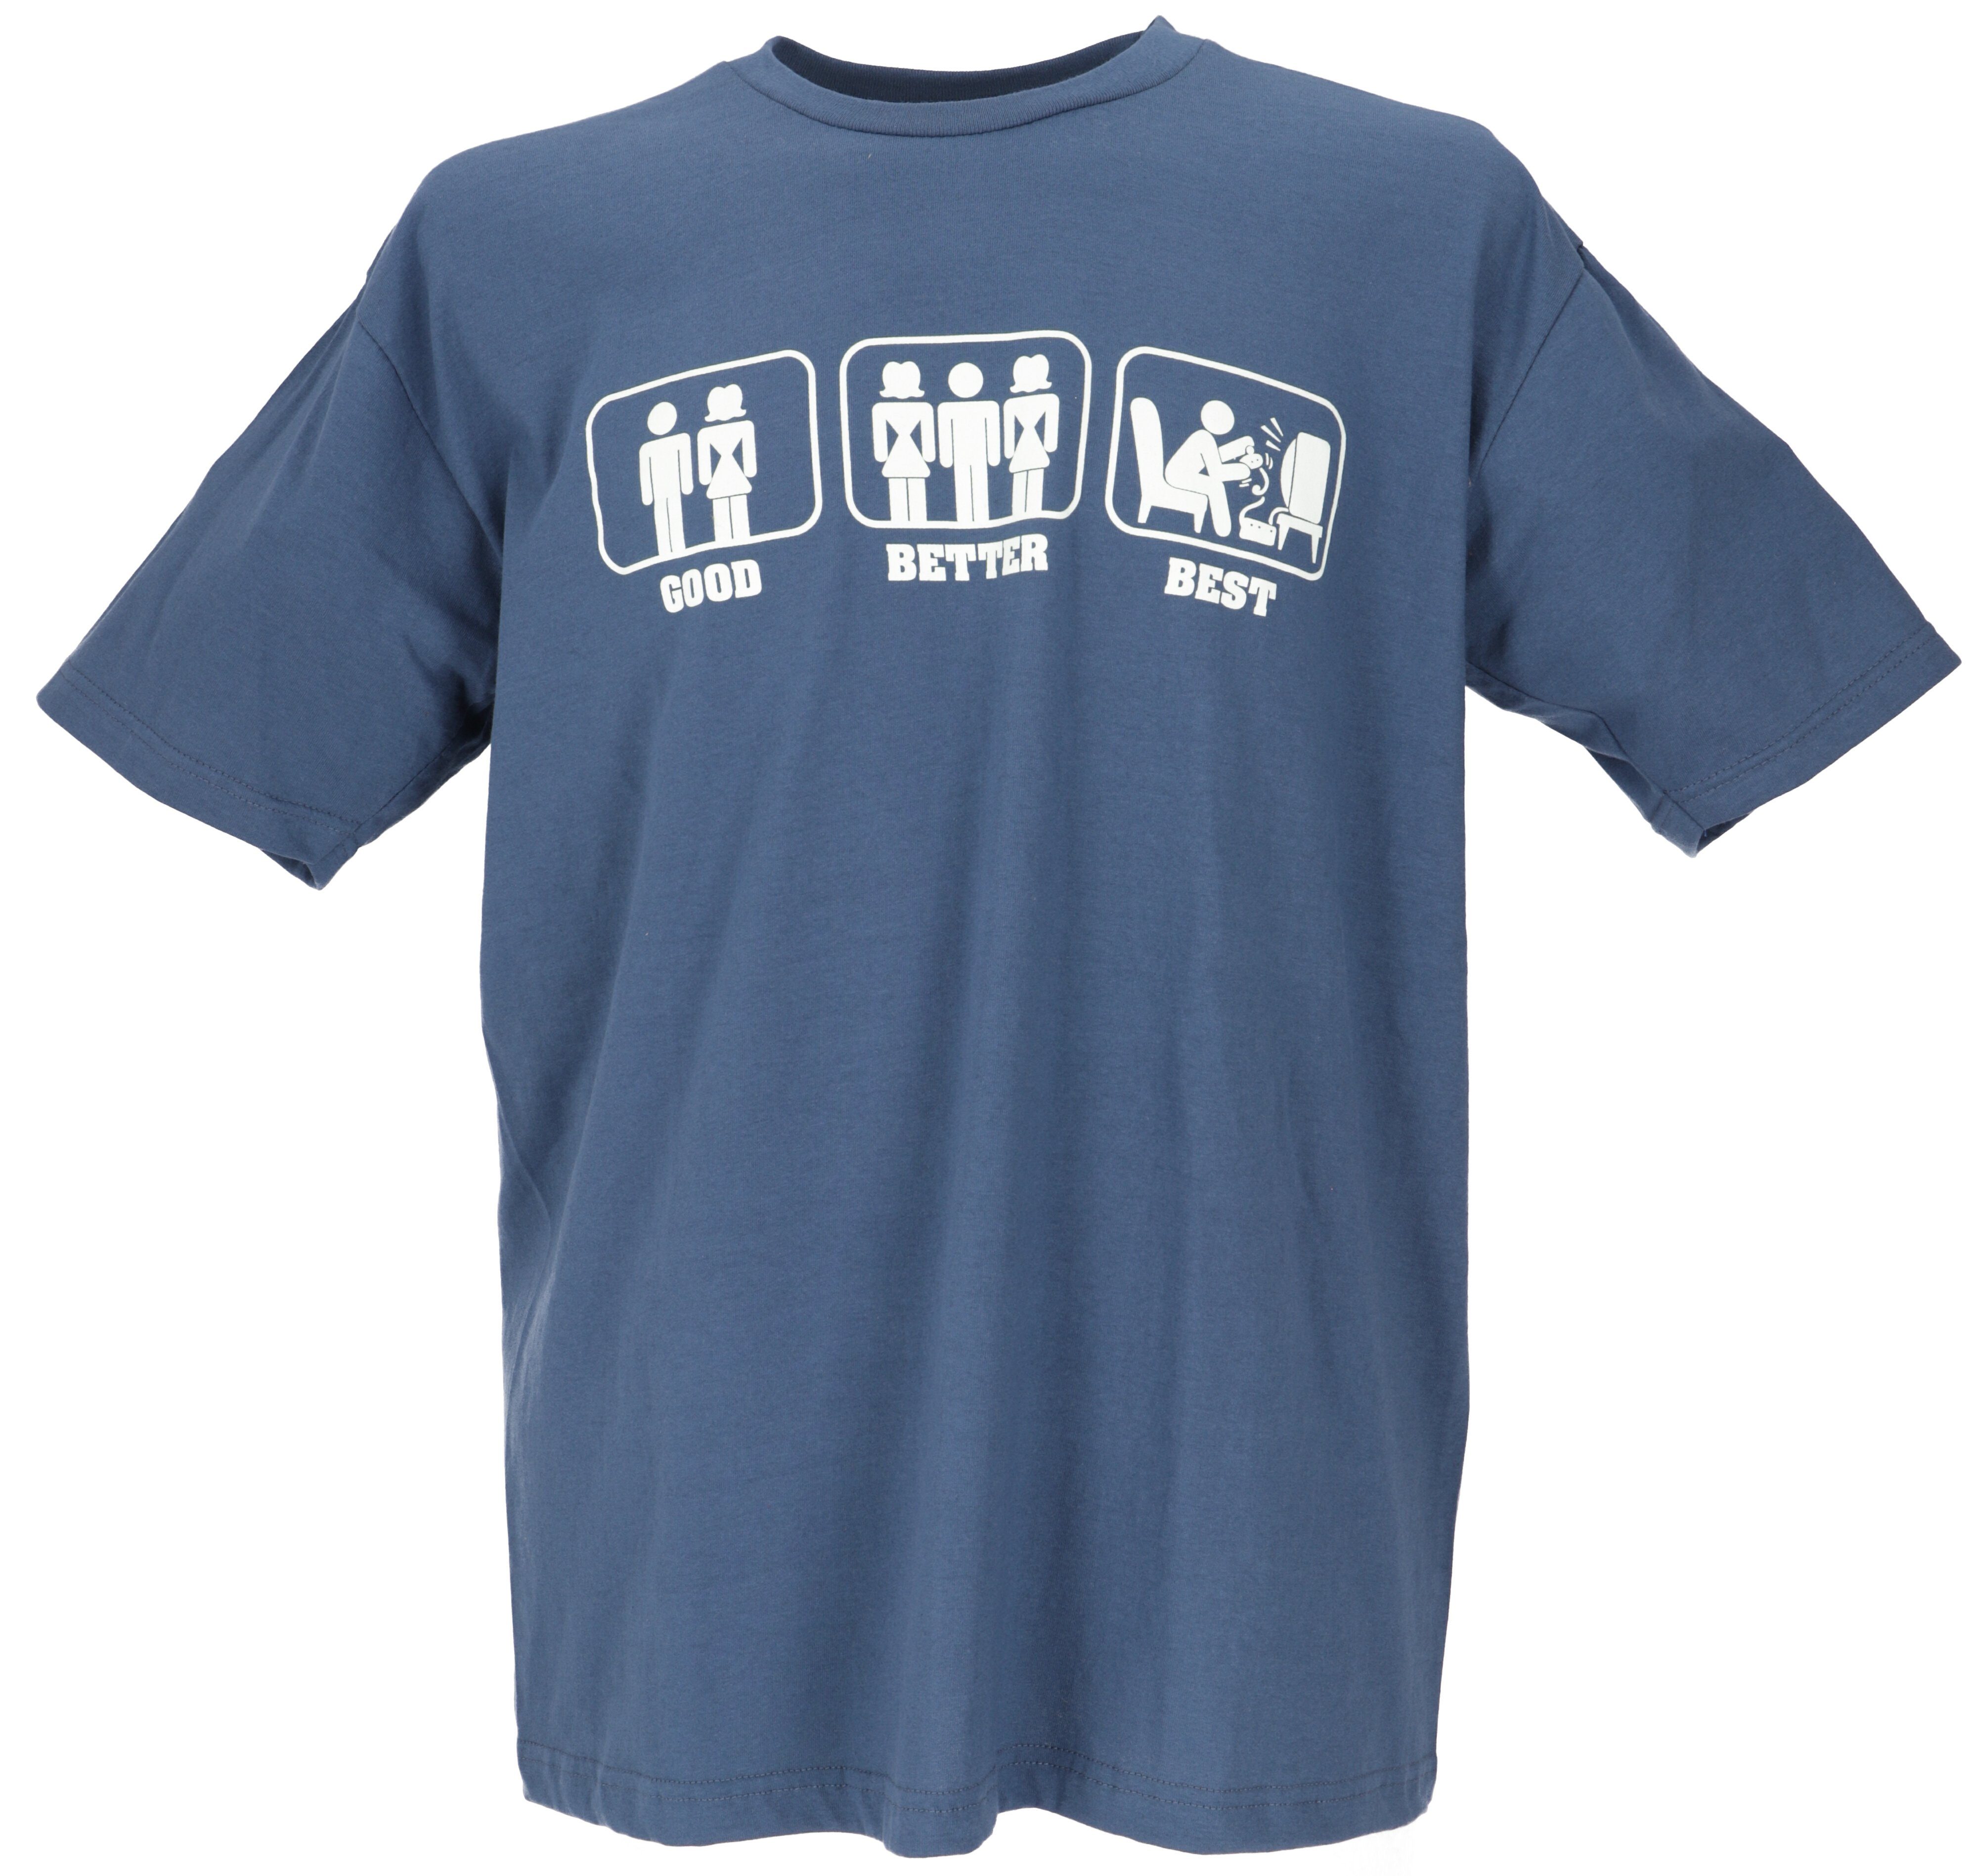 Guru-Shop T-Shirt Fun Retro Art T-Shirt - Good Better Best alternative Bekleidung